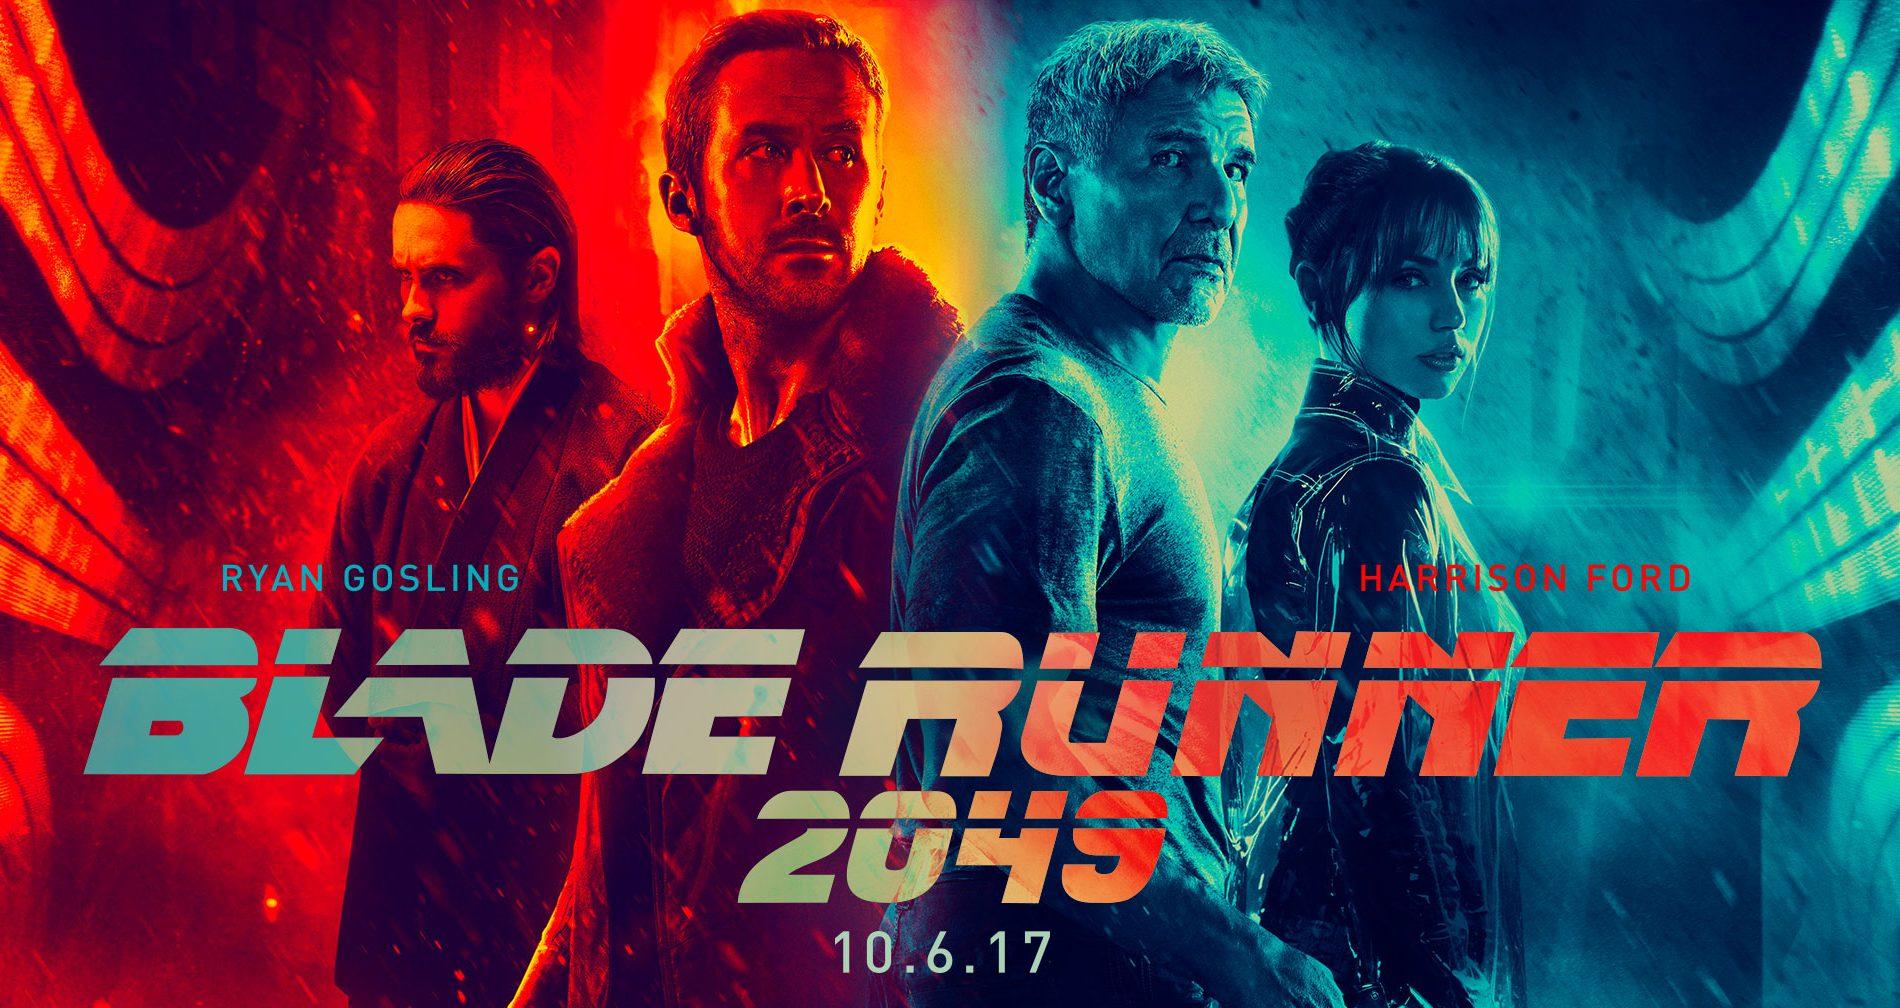 La esperada Blade Runner, tiernos ponis y el terror de una posesión llegan este finde al cine